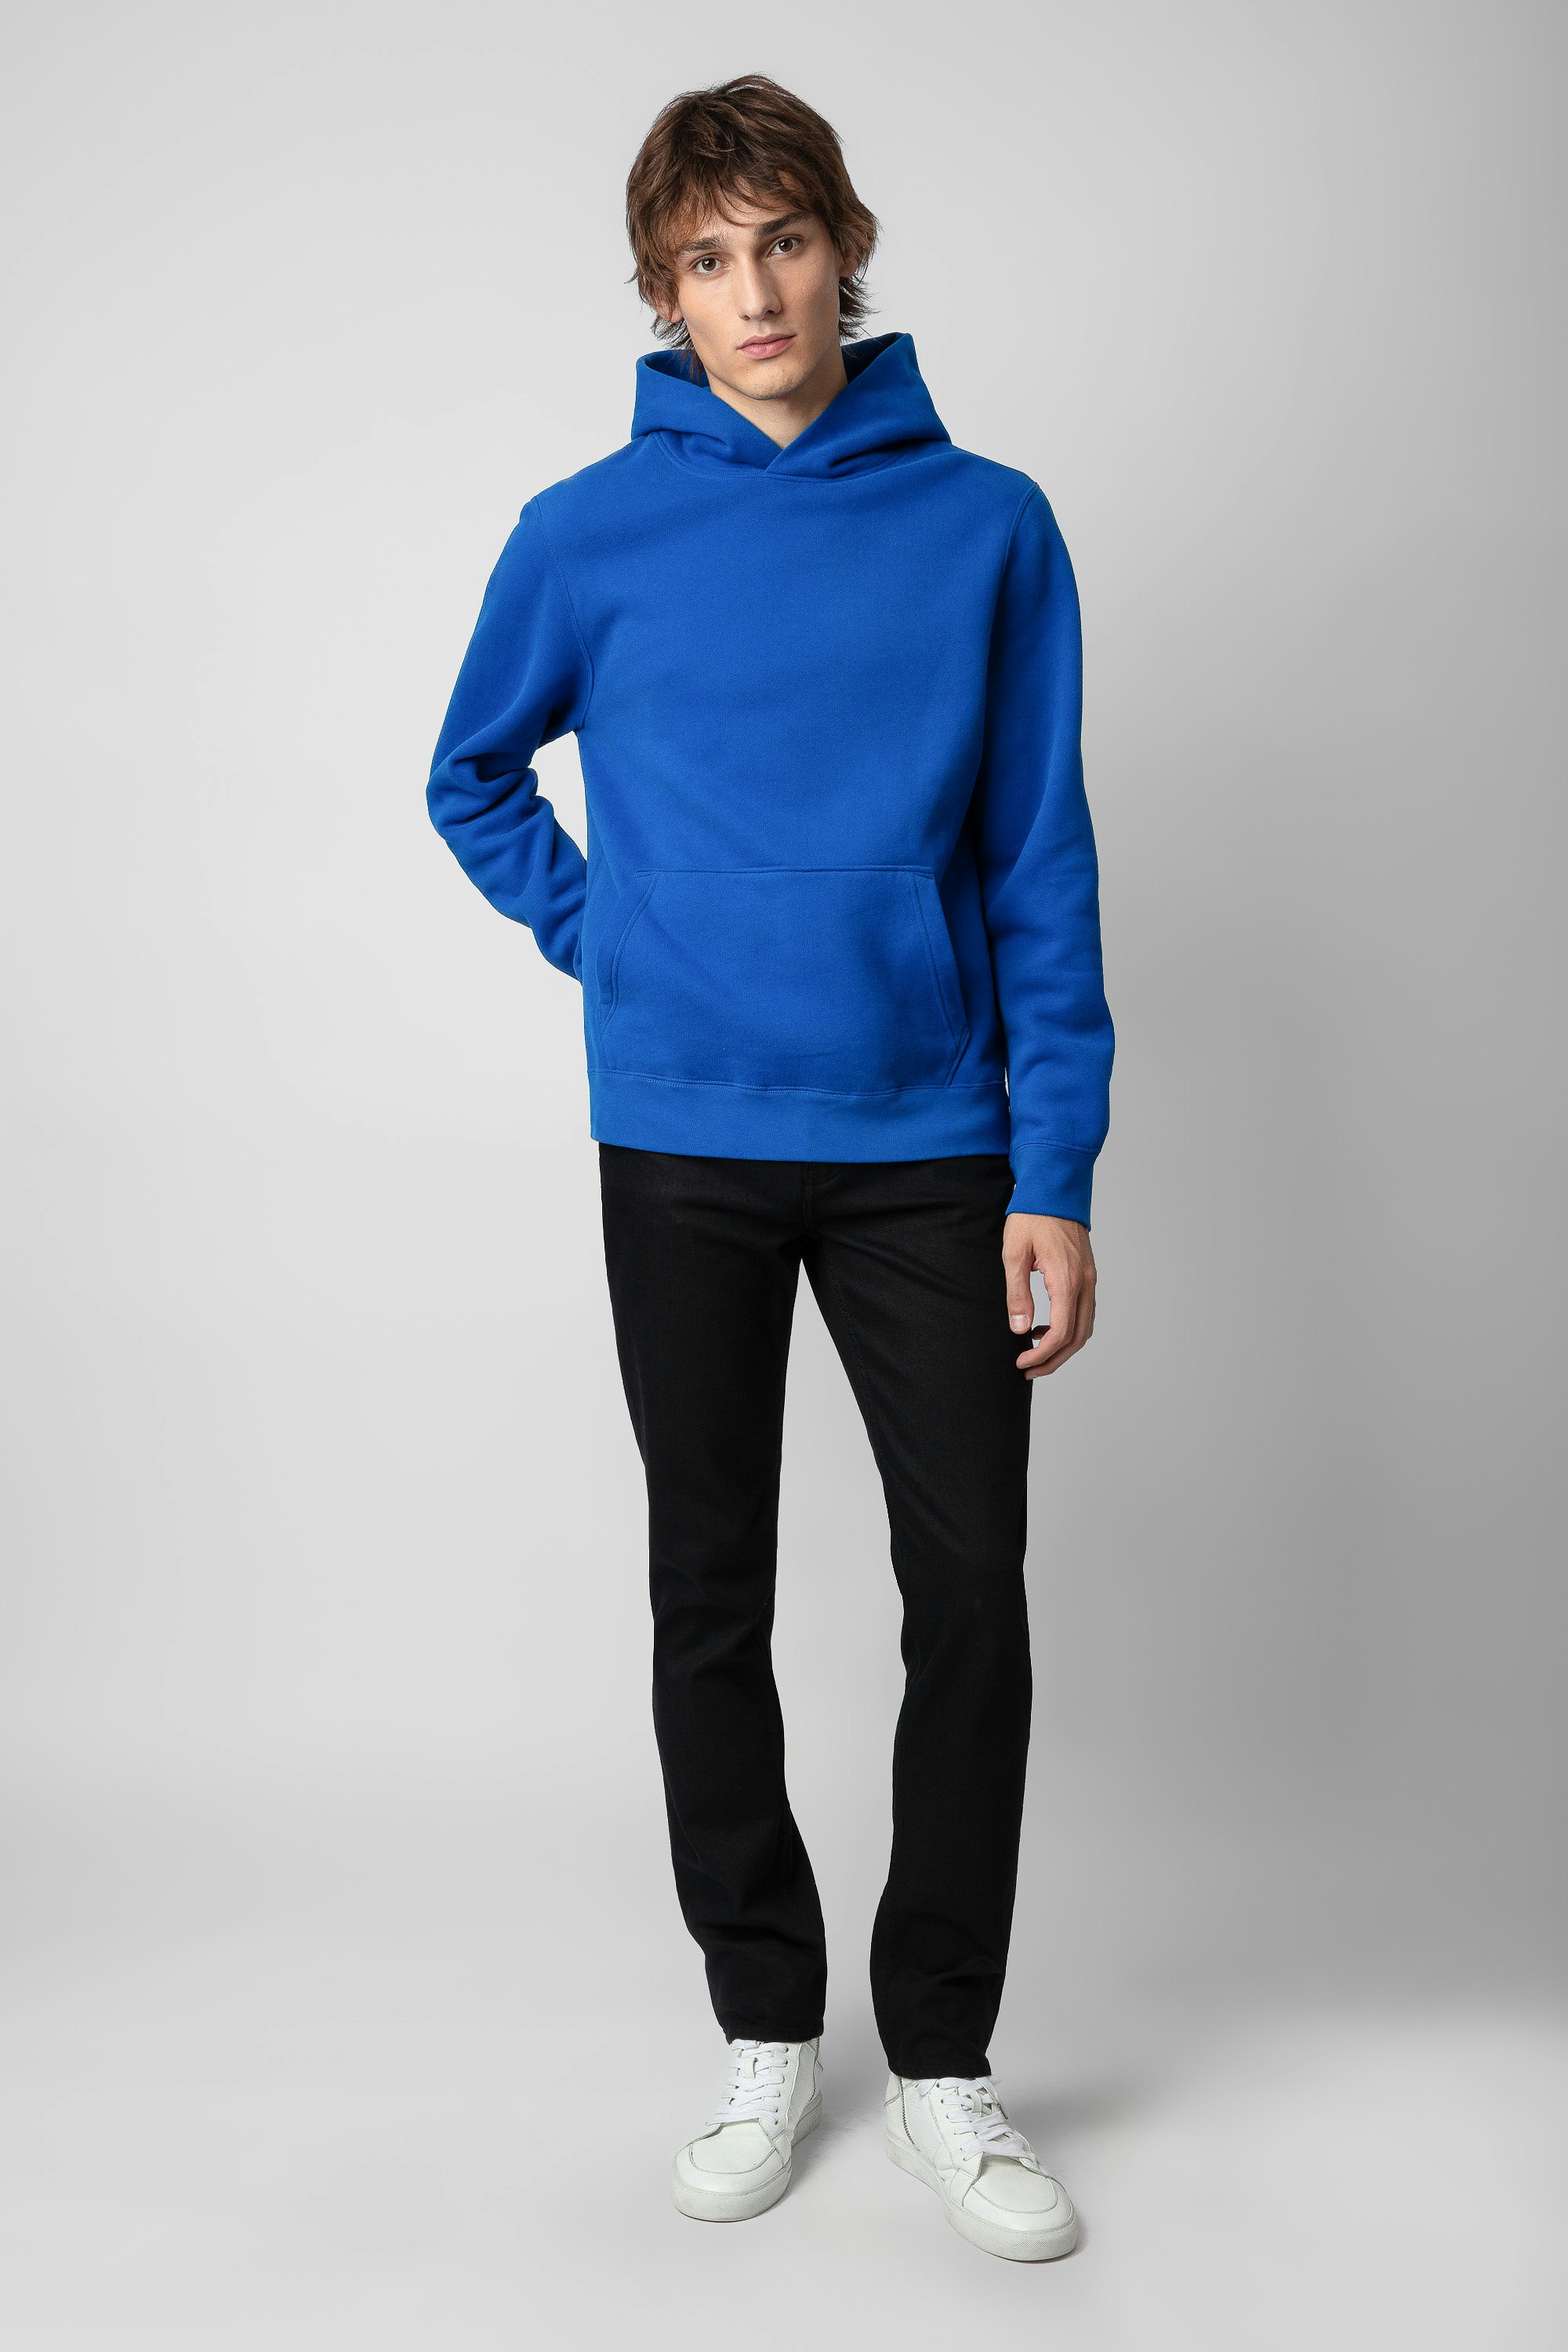 Sweatshirt Sanchi Photoprint - Sweatshirt à capuche bleu orné d'un photoprint Bike au dos.